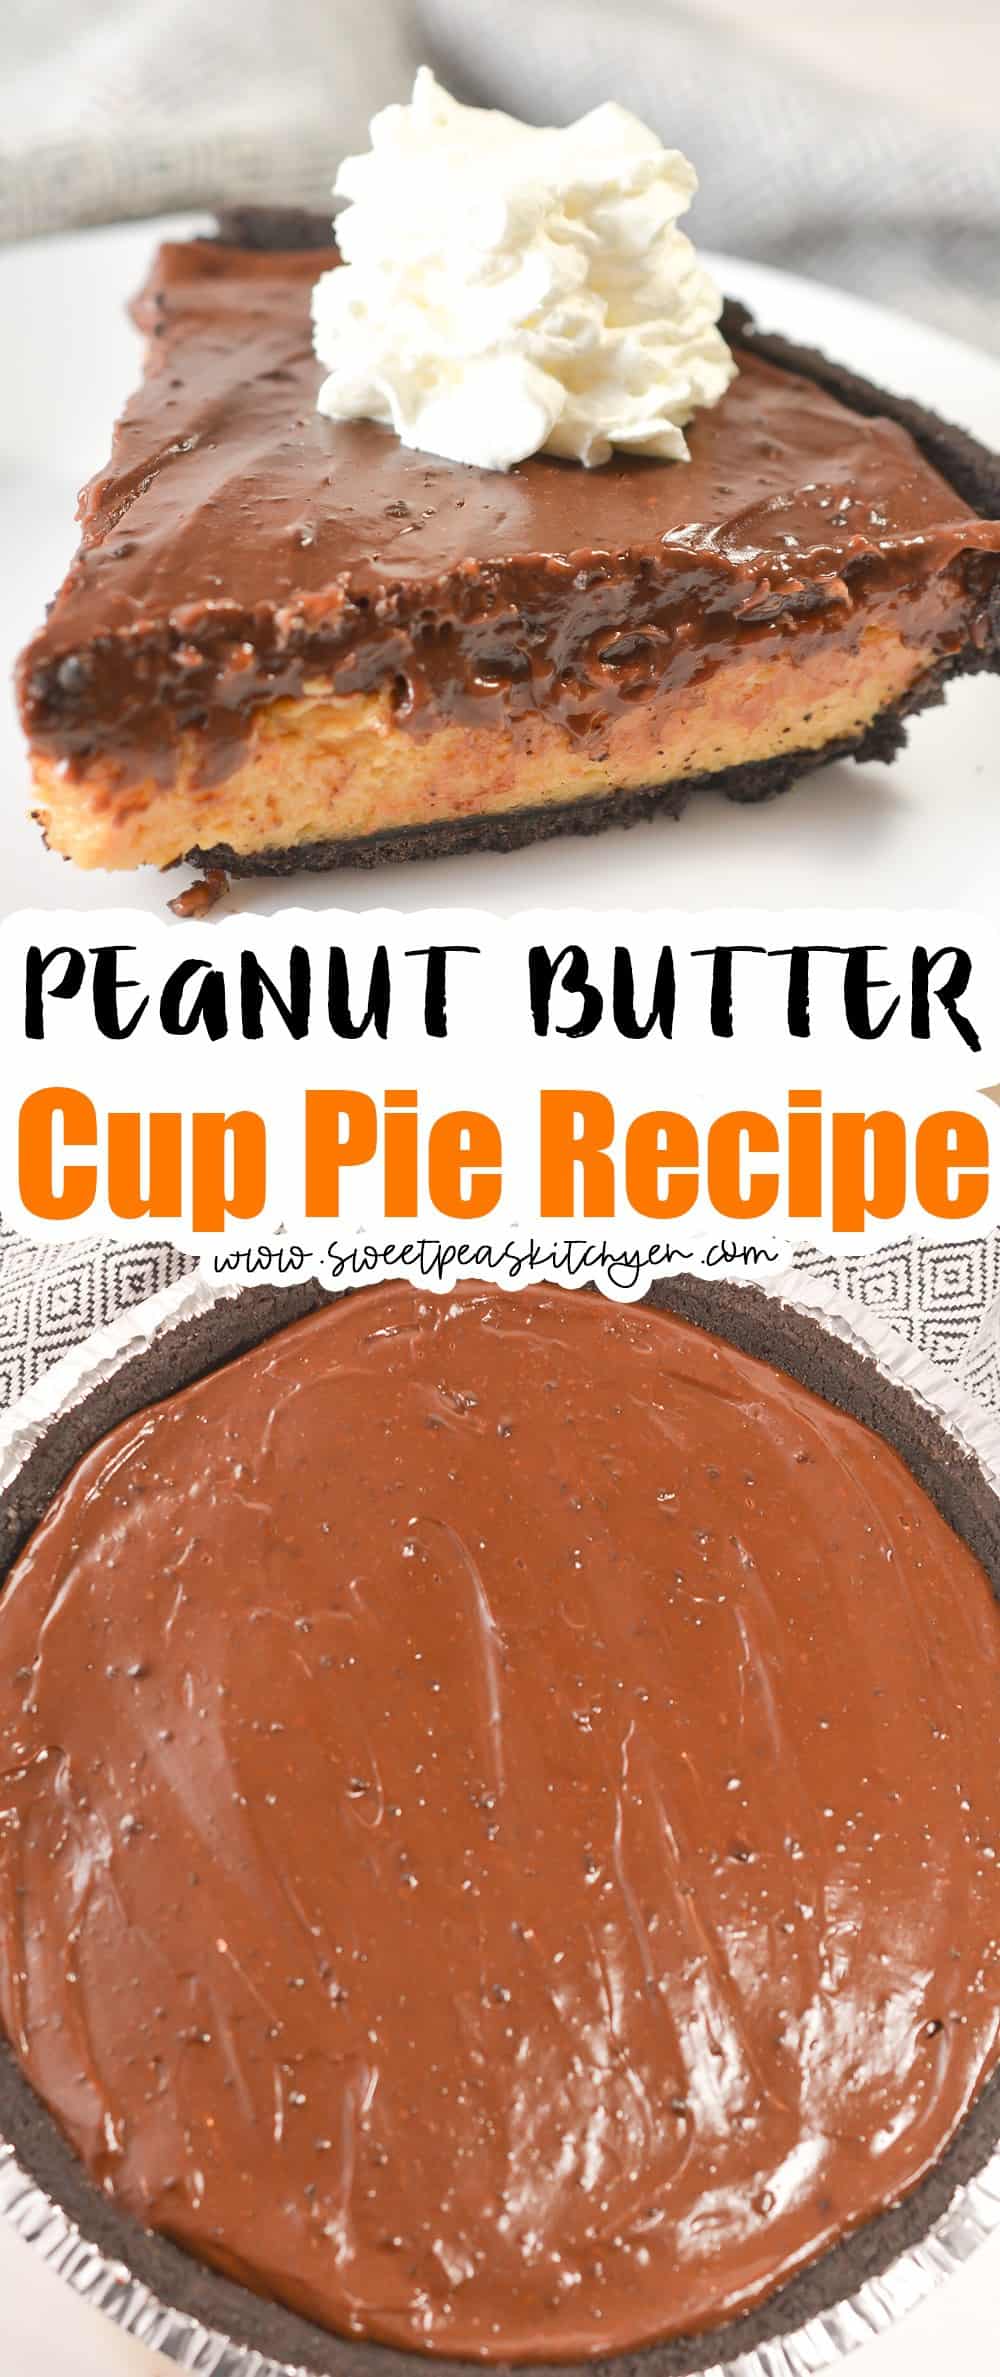 Peanut Butter Cup Pie